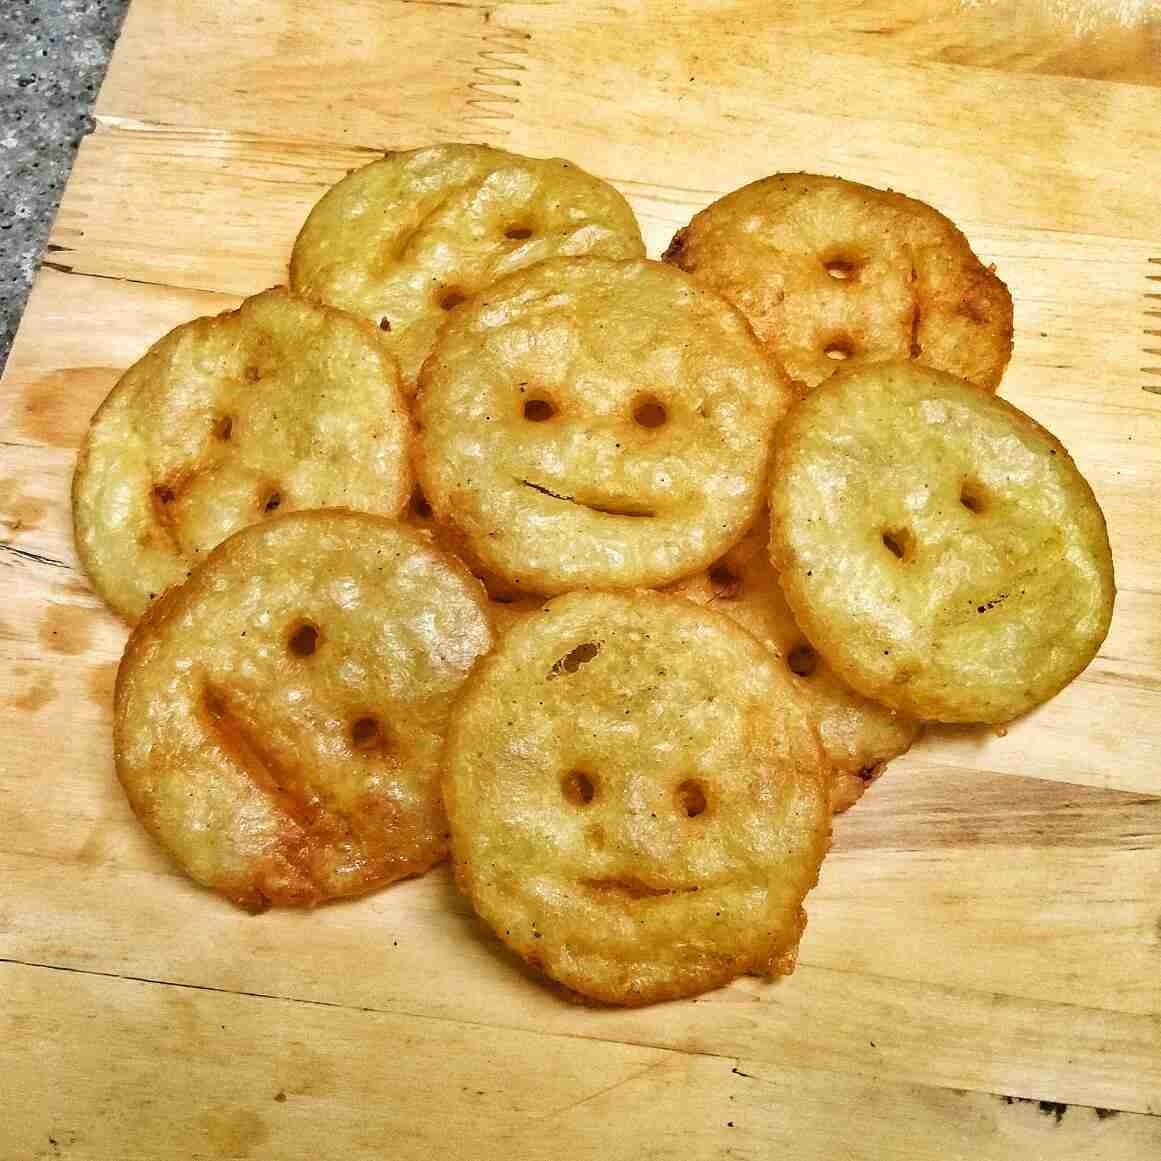 Smiley Potato #LebihSehat